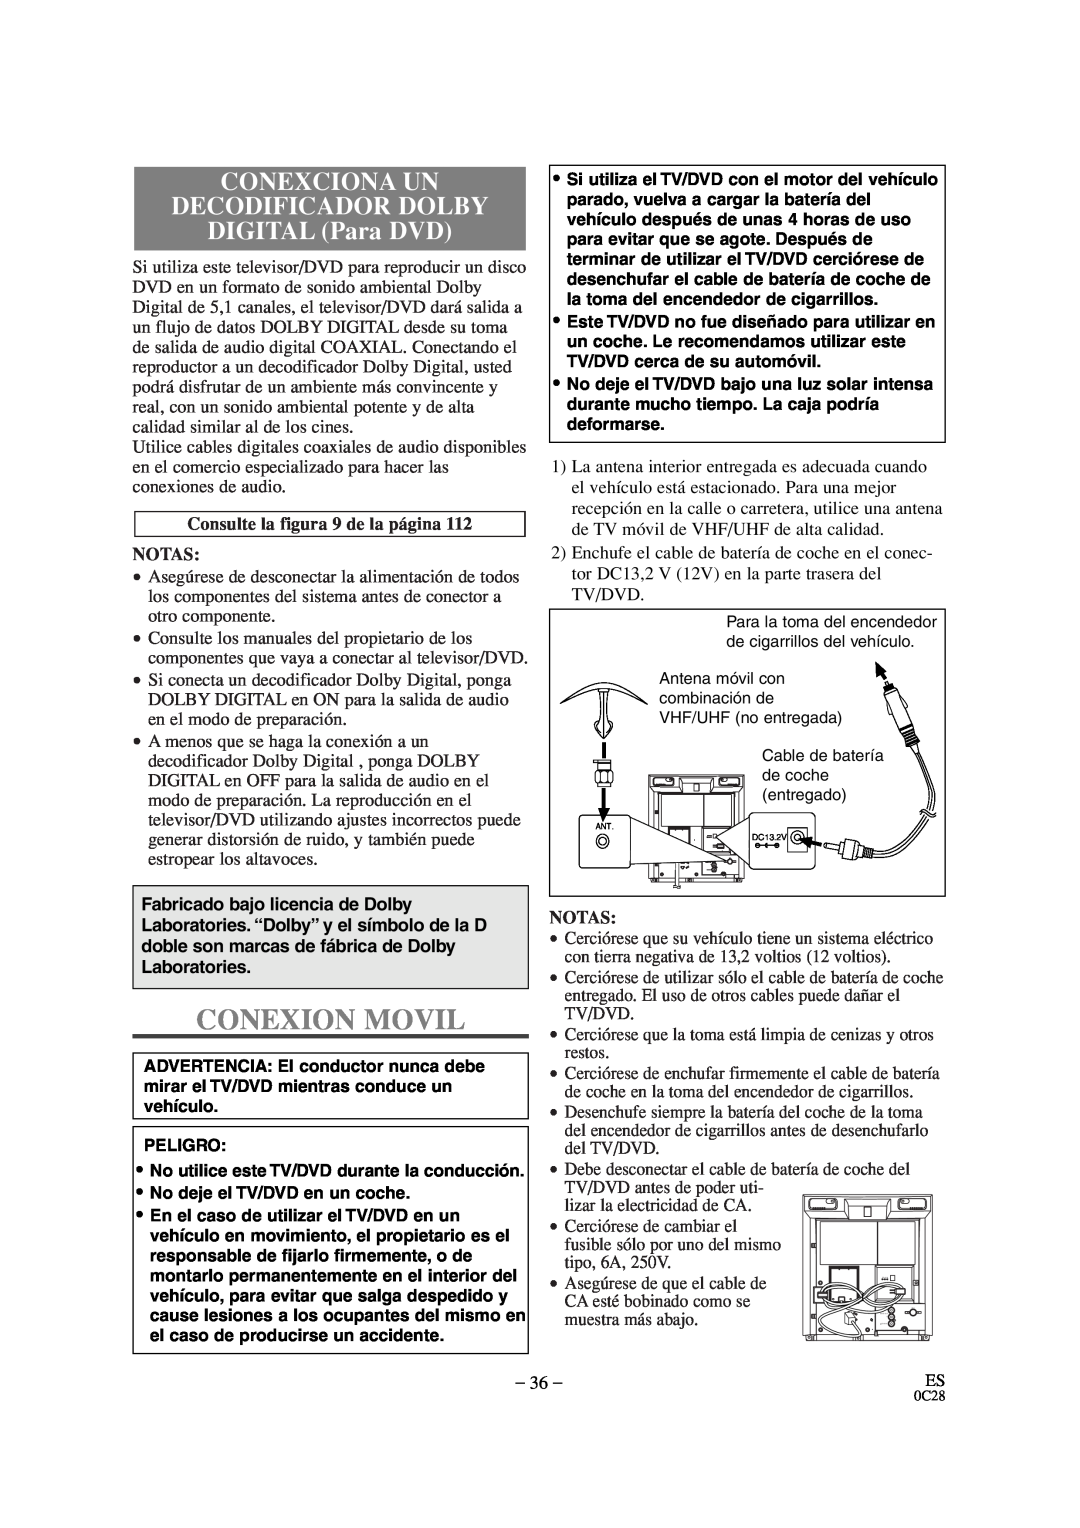 Sylvania SRTD309 owner manual Conexion Movil, CONEXCIONA UN DECODIFICADOR DOLBY DIGITAL Para DVD, Notas 